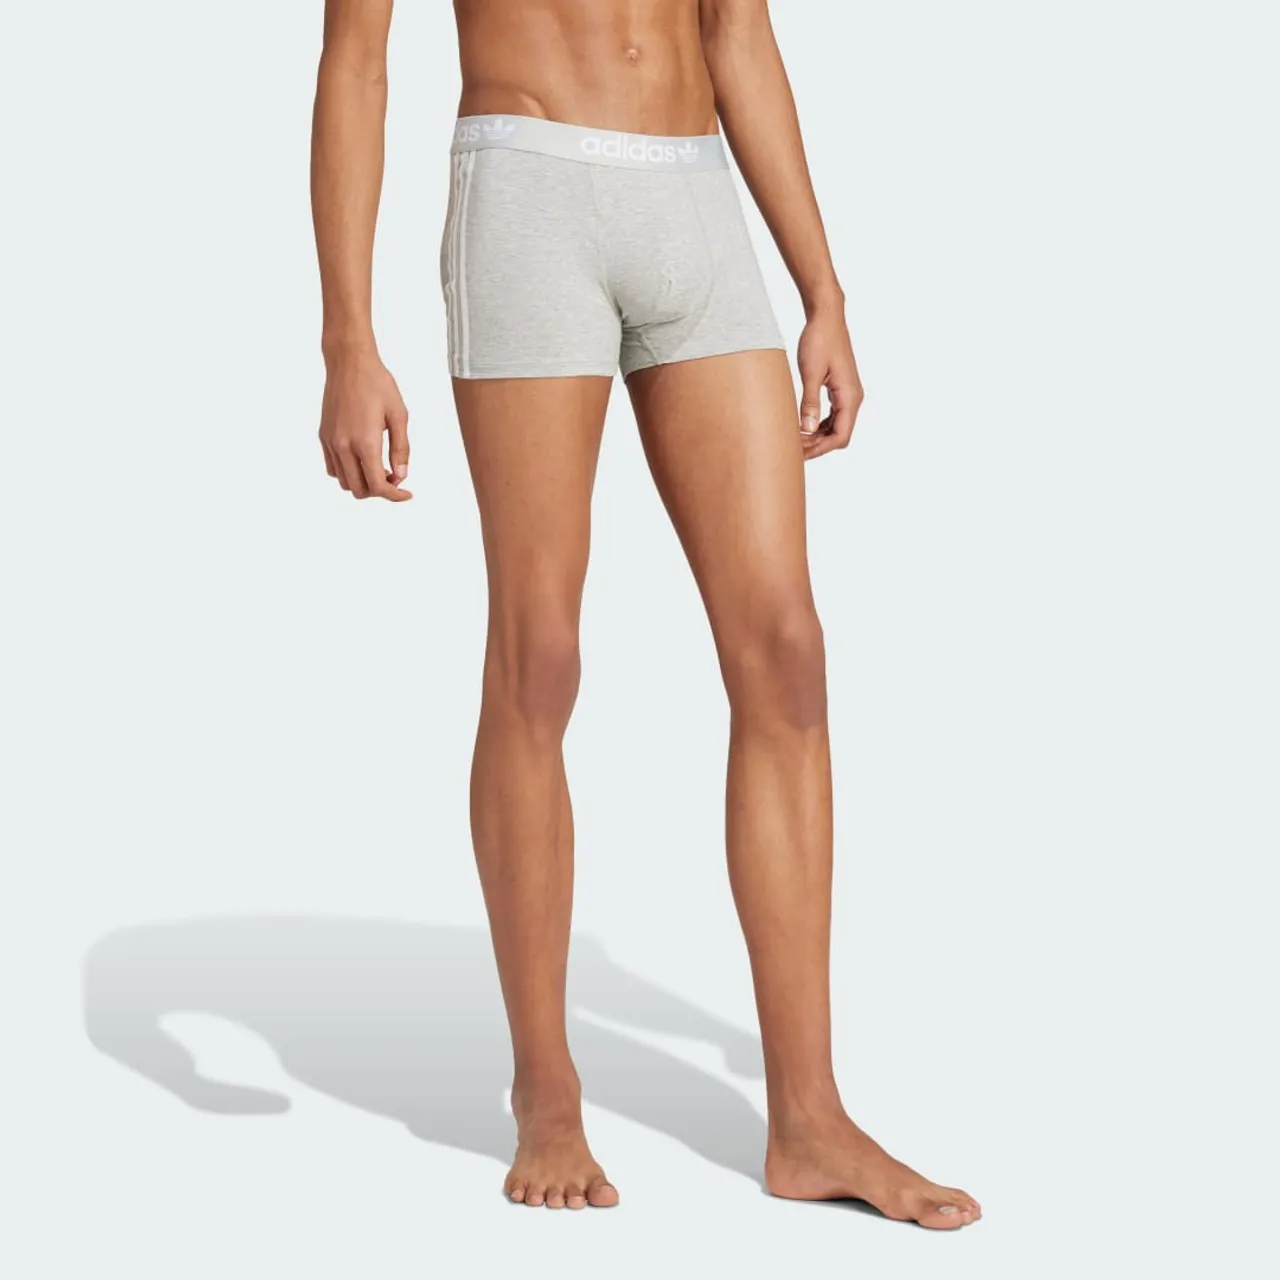 Comfort Flex Cotton 3-Stripes Trunk Underwear